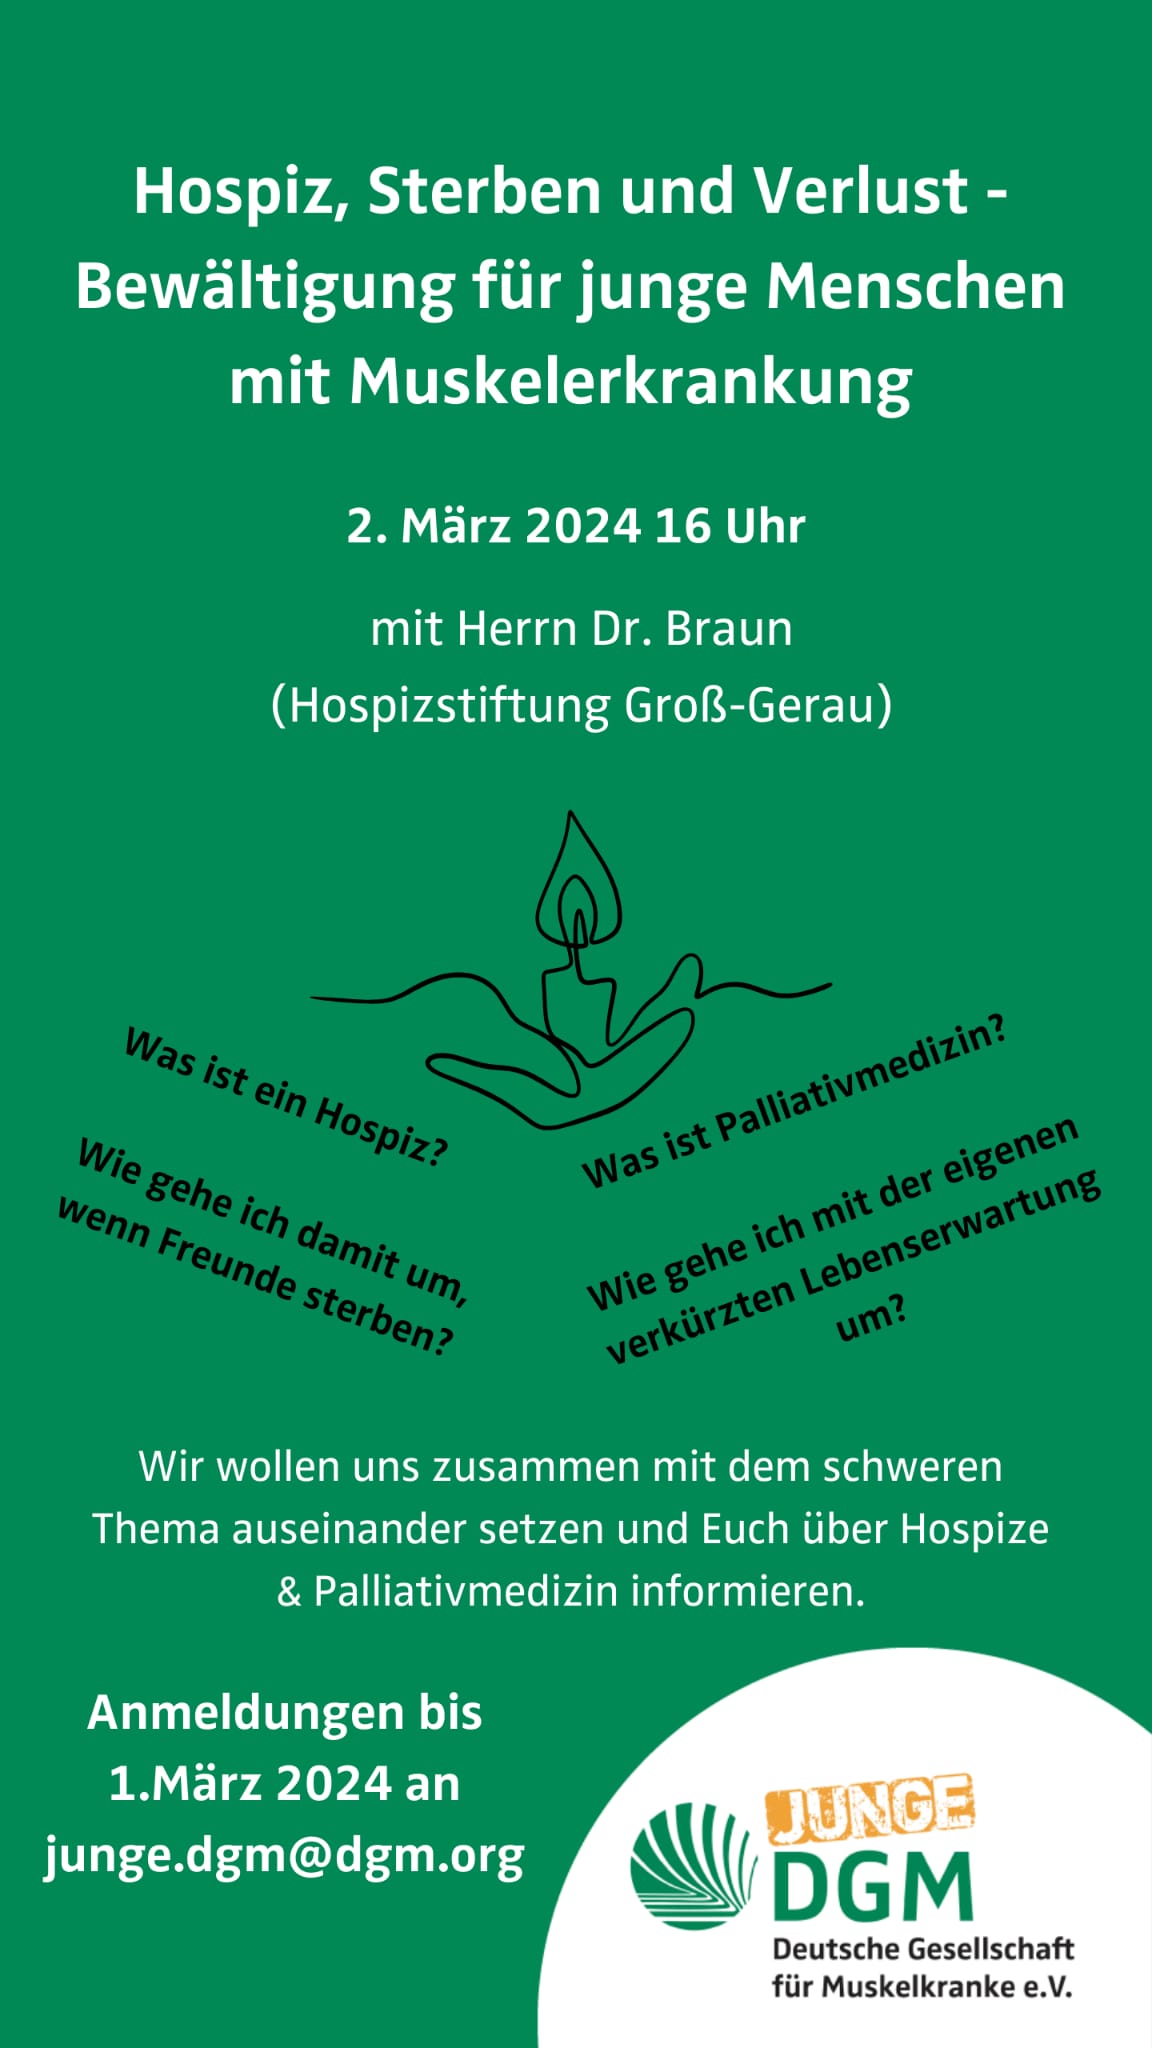 Einladung zum Workshop "Hospiz, Sterben und Verlust" am 2. März 2024